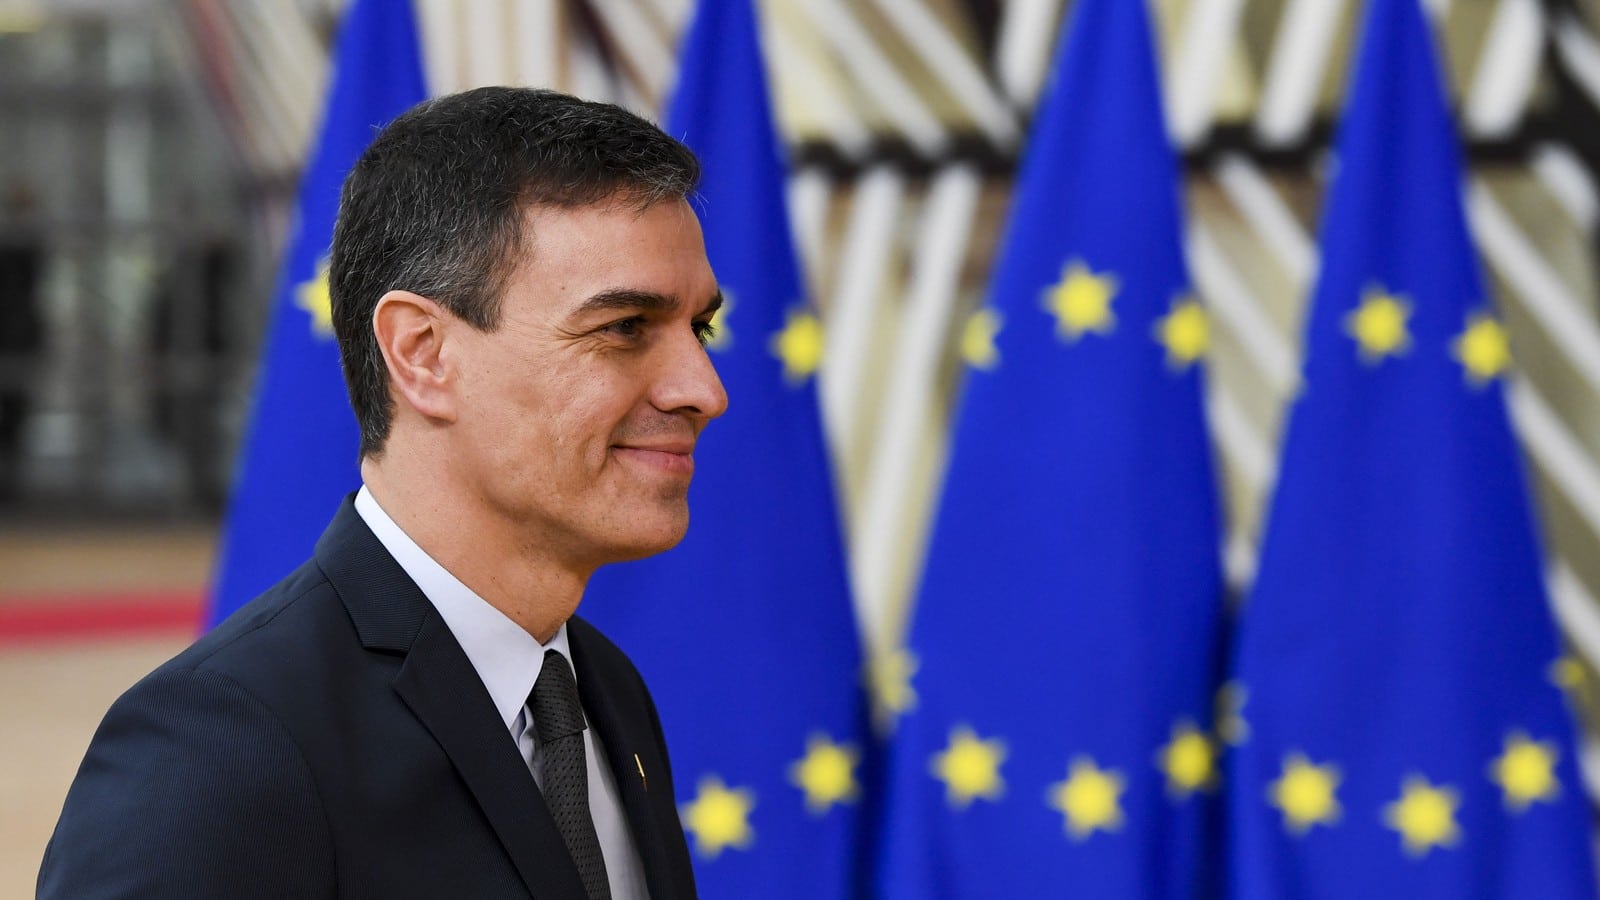 L’Espagne connaît-elle une montée de l’euroscepticisme ?